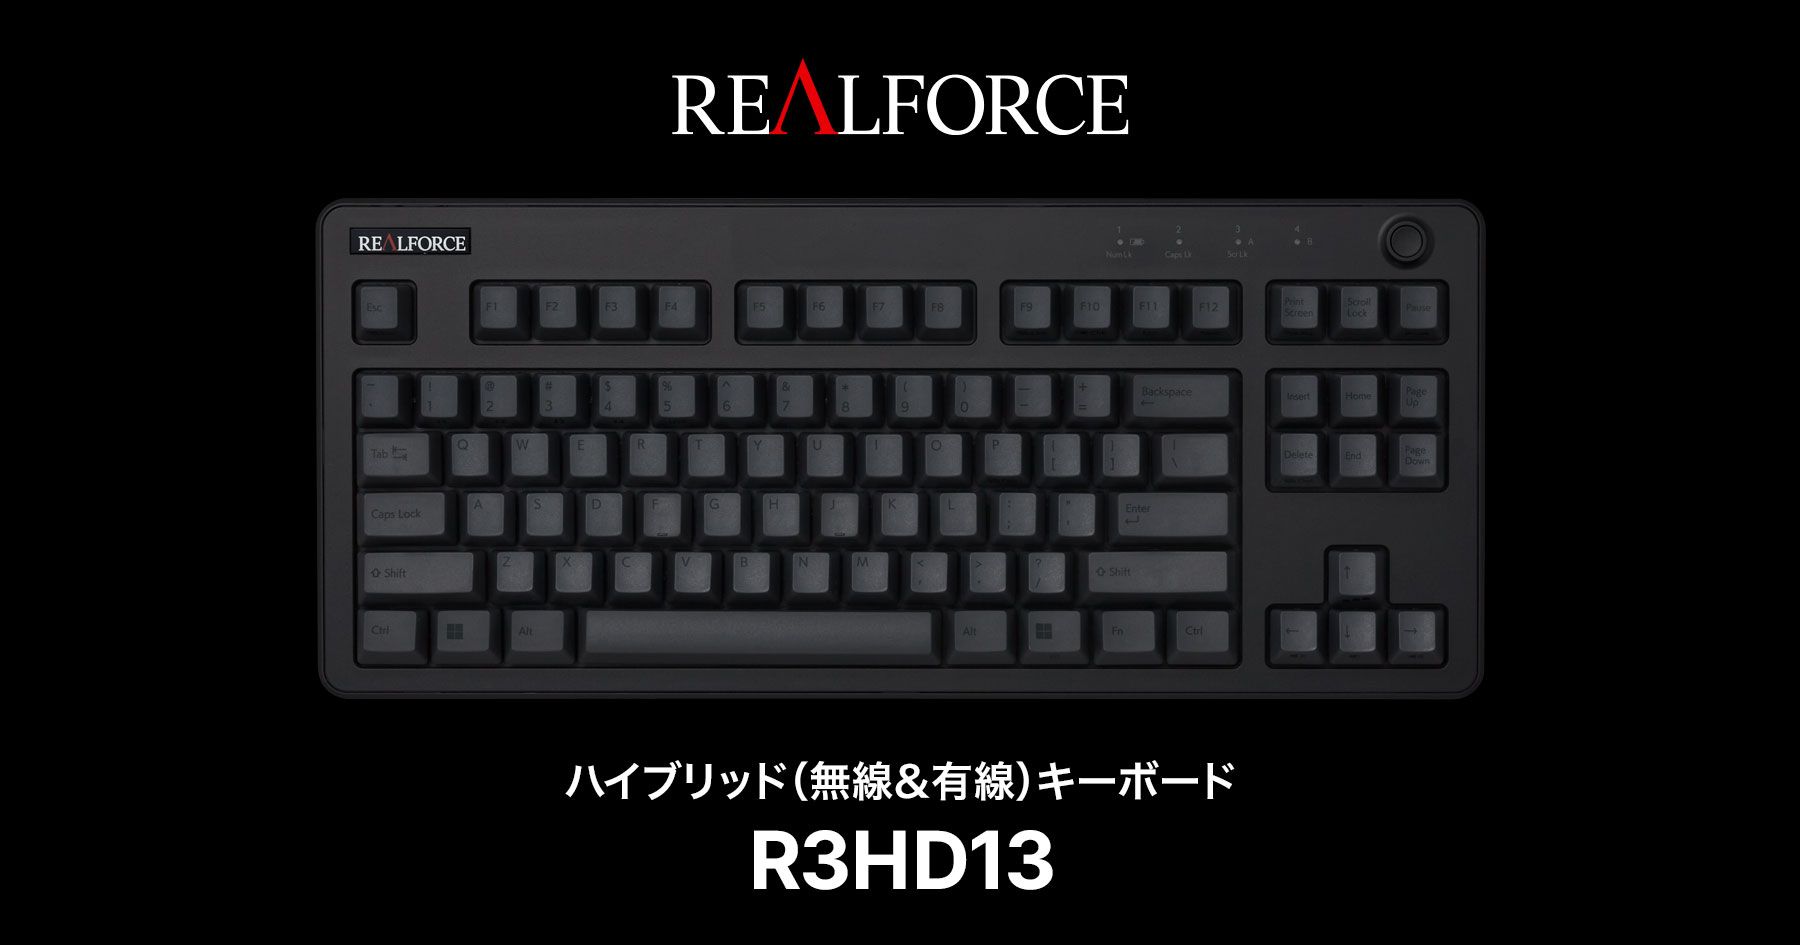 REALFORCE リアルフォース　R3HC13